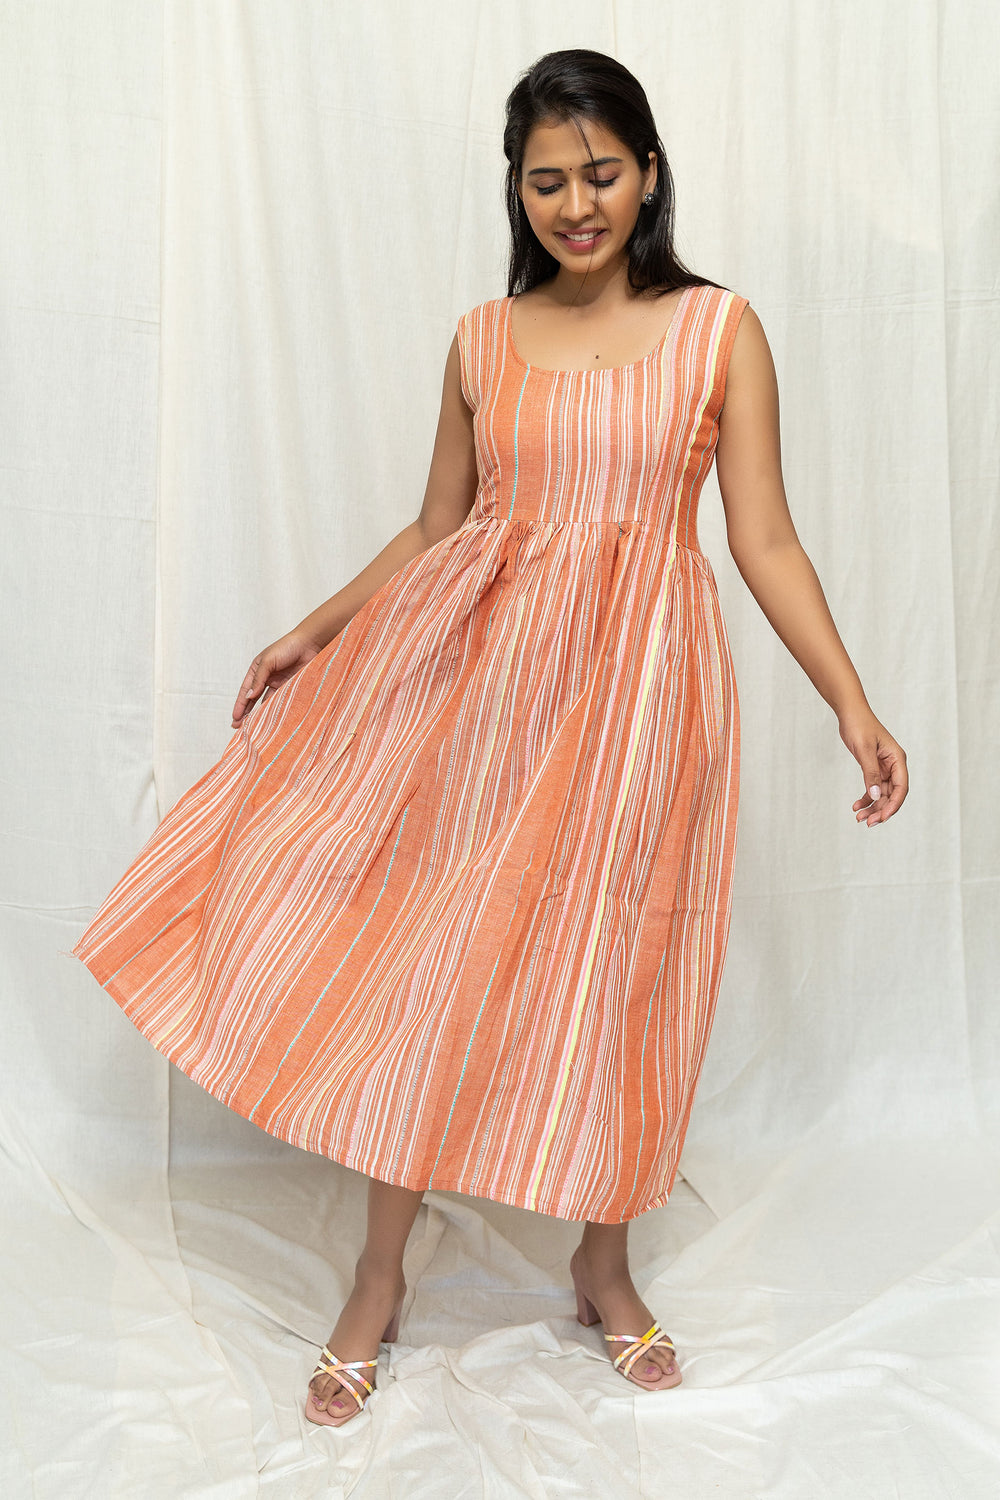 Brown Striped Cotton Dress - Tantu 